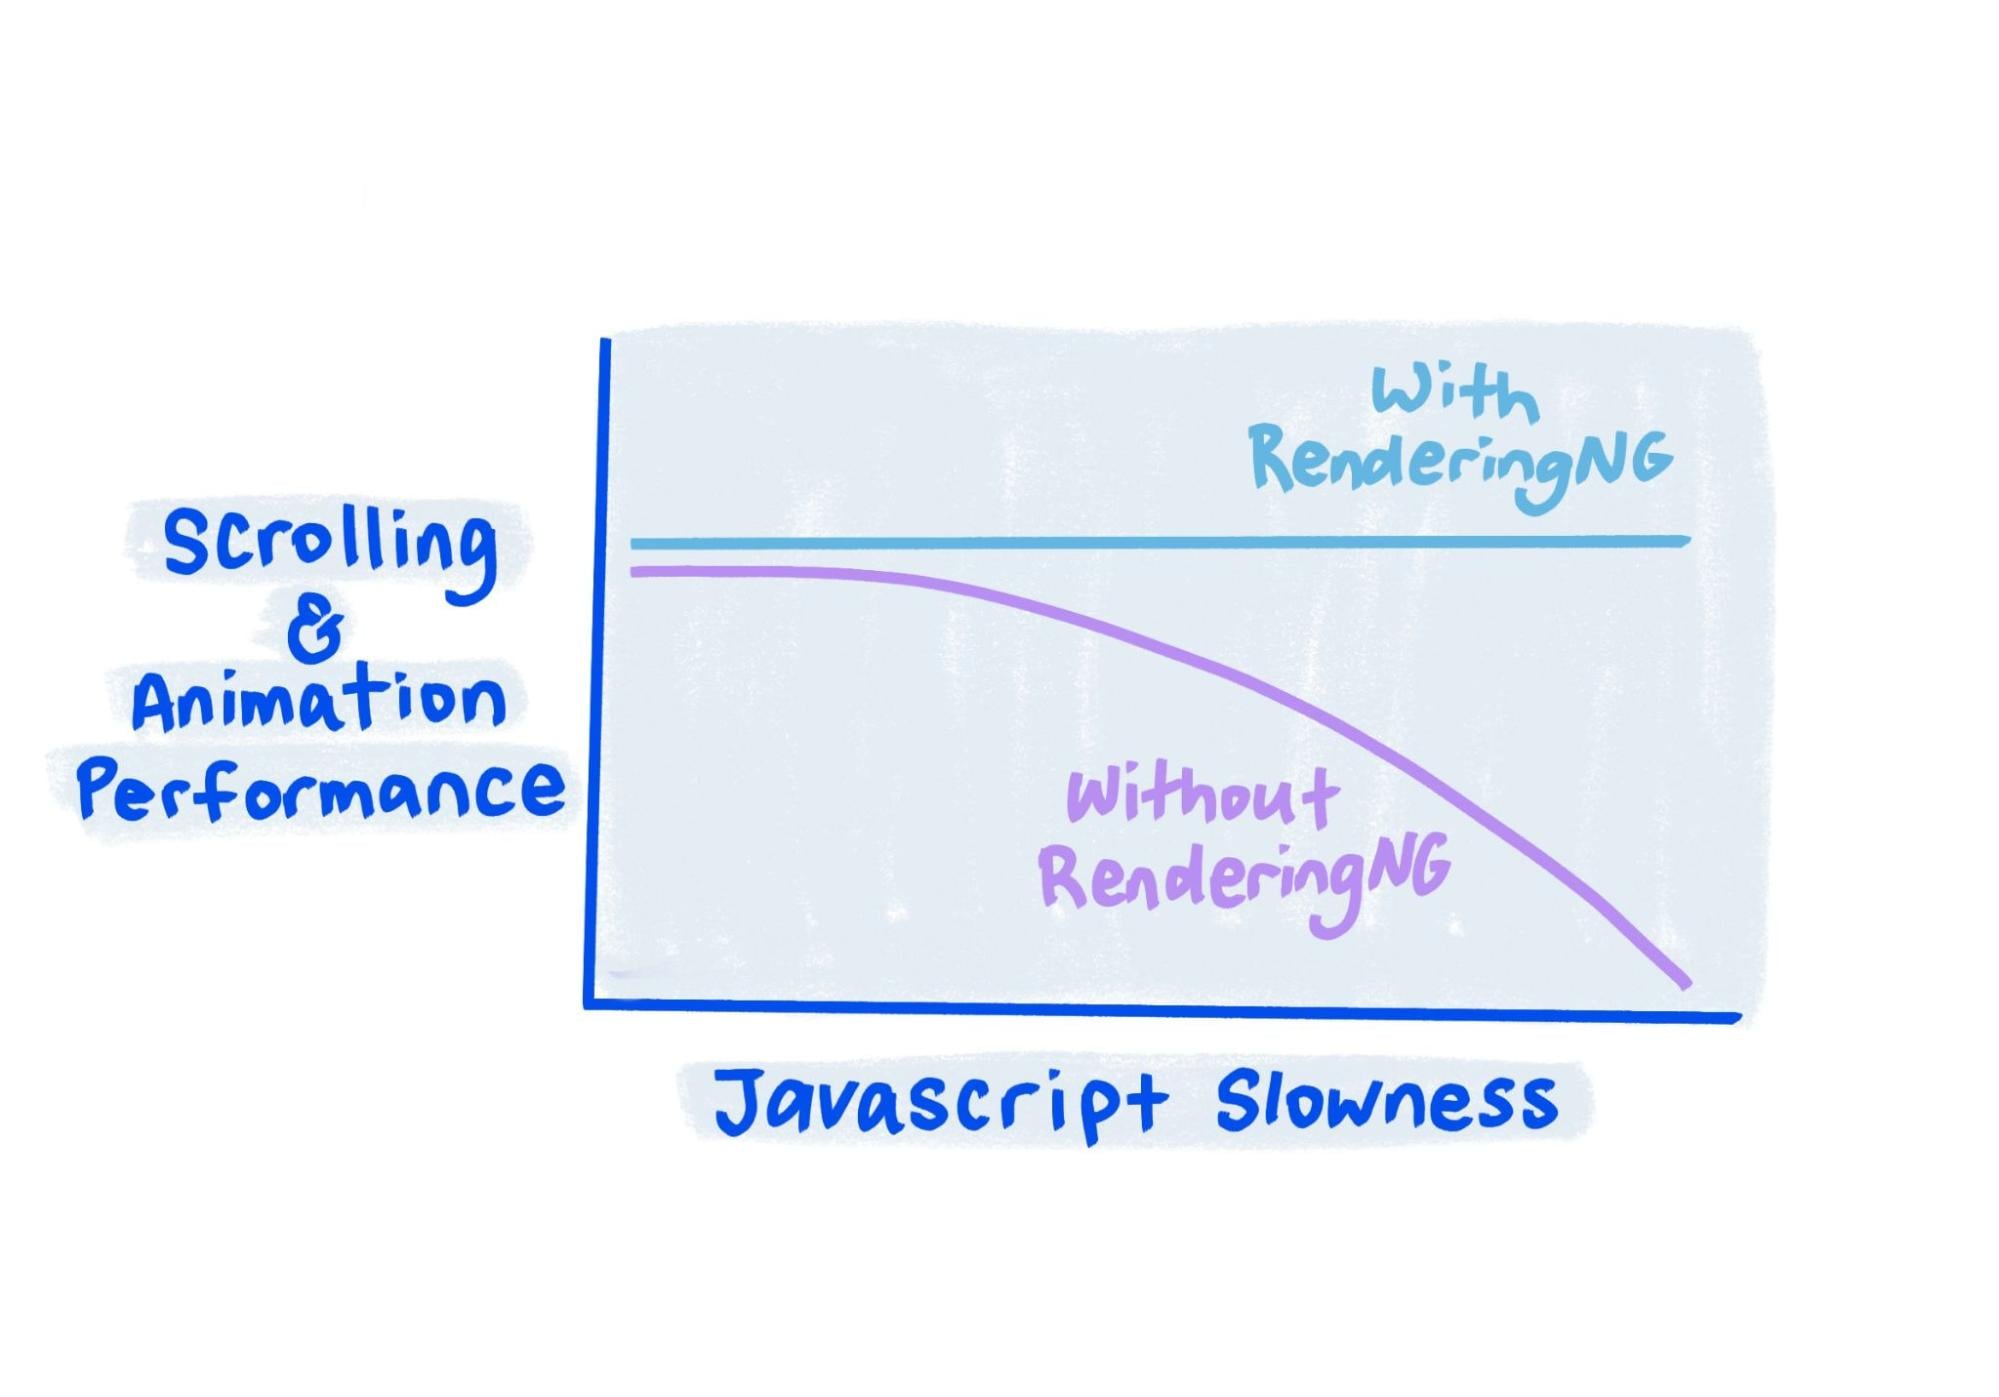 Sketch muestra que con RenderingNG el rendimiento se mantiene sólido incluso cuando JavaScript es muy lento.